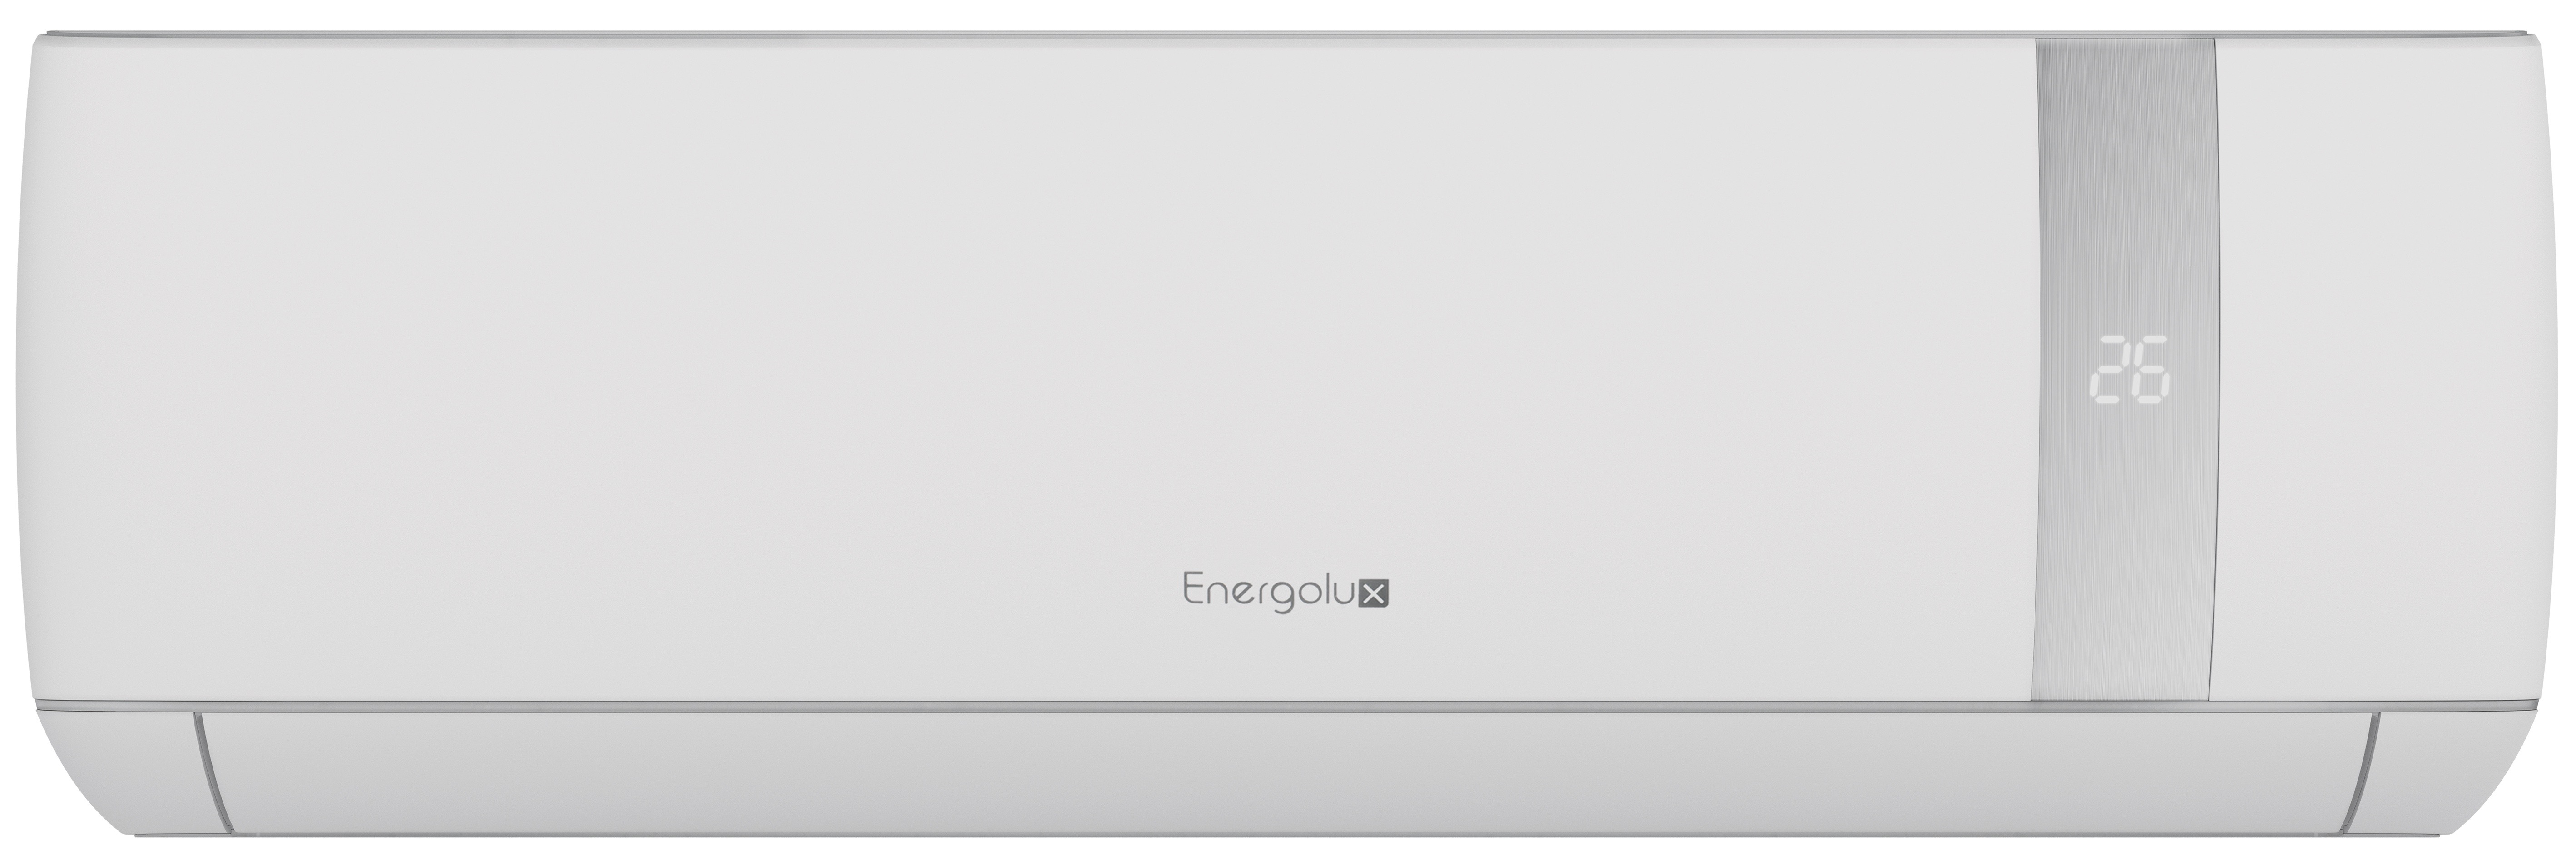 1. Energolux сплит-система настенный SAS18BN1-AI (серия Bern)